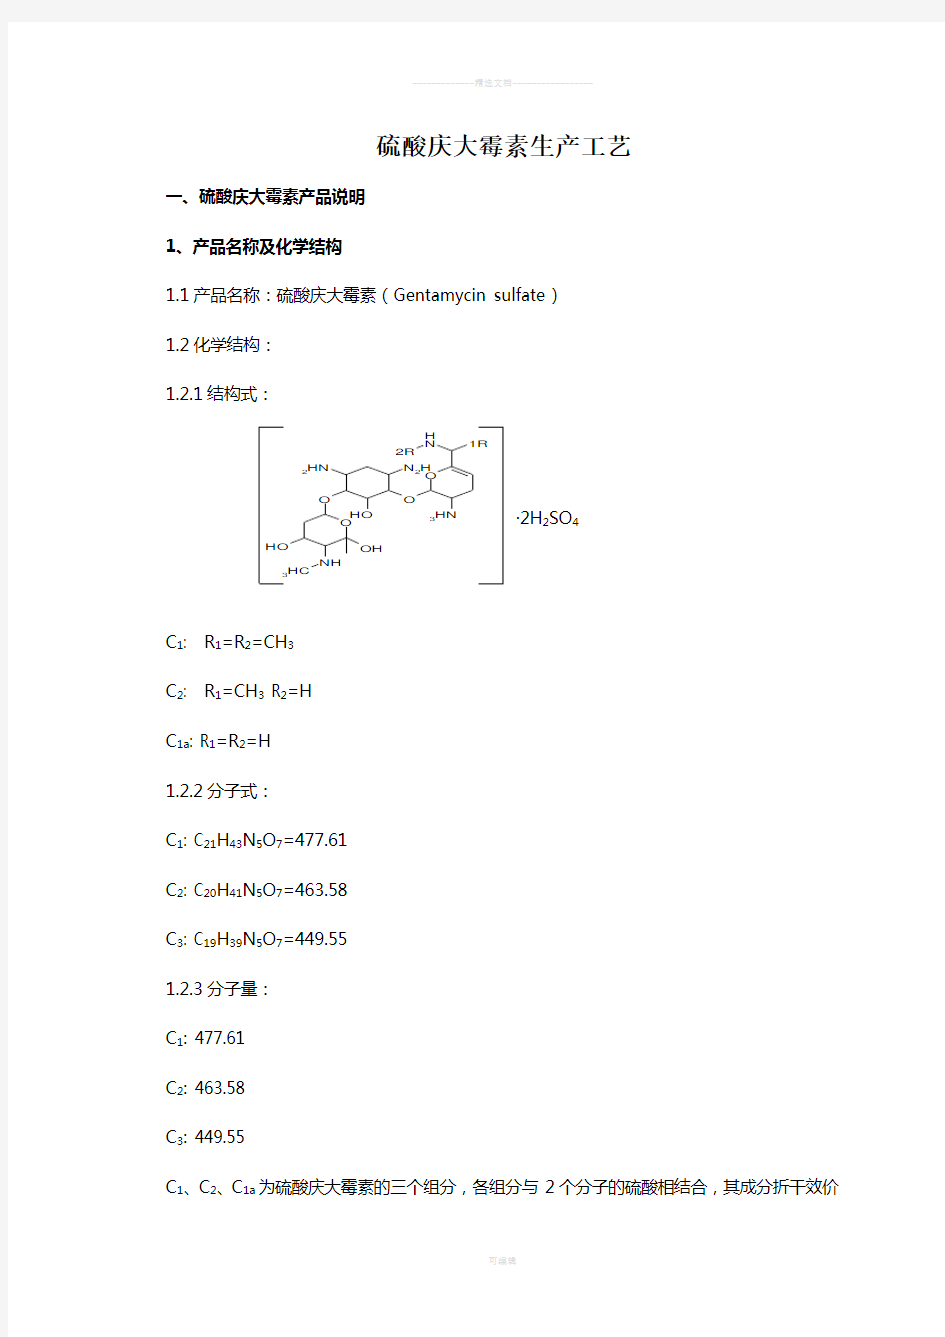 硫酸庆大霉素生产工艺流程图